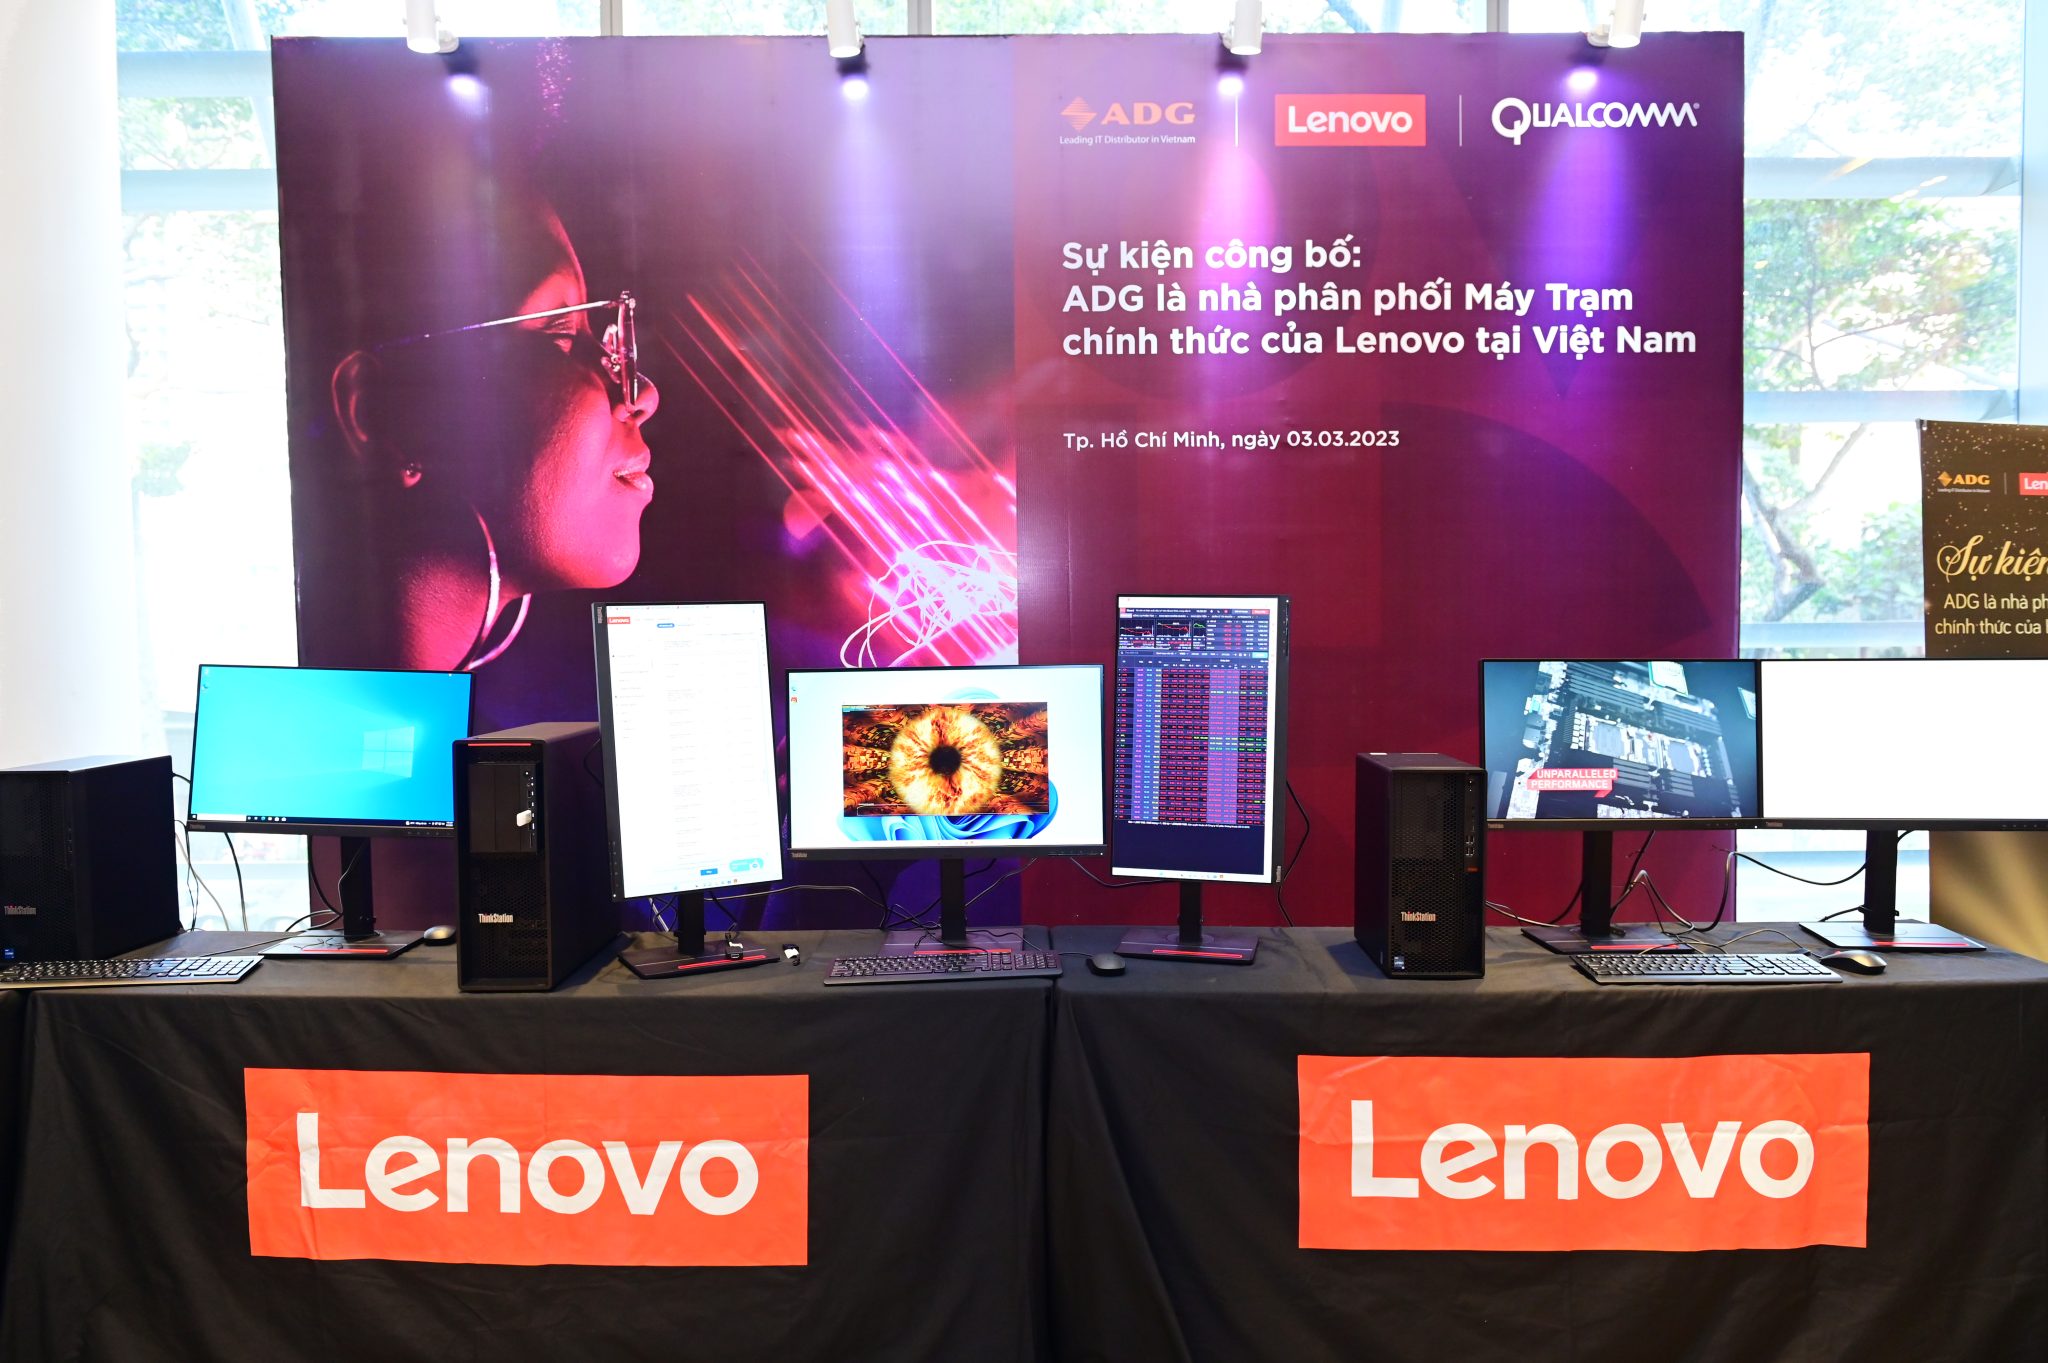 ADG – Nhà phân phối máy tính xách tay Lenovo chính thức tại Việt Nam